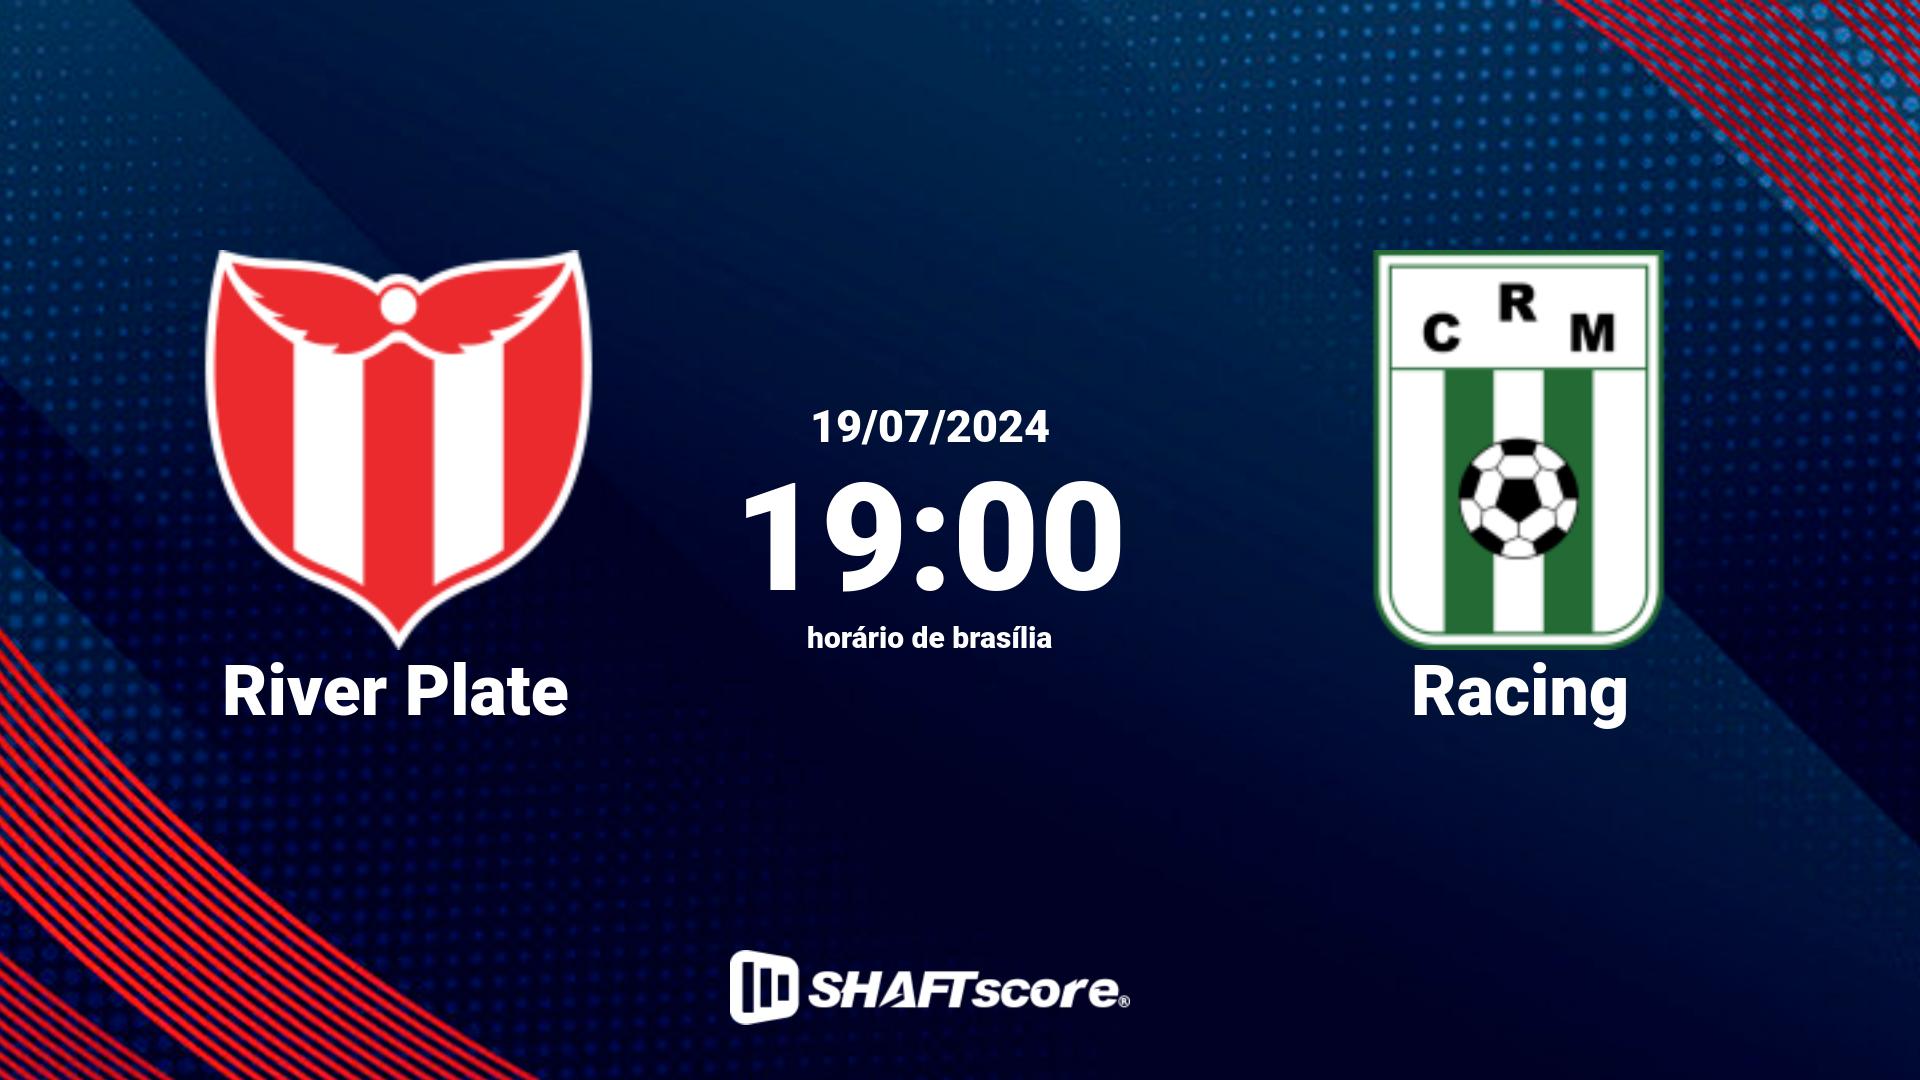 Estatísticas do jogo River Plate vs Racing 19.07 19:00